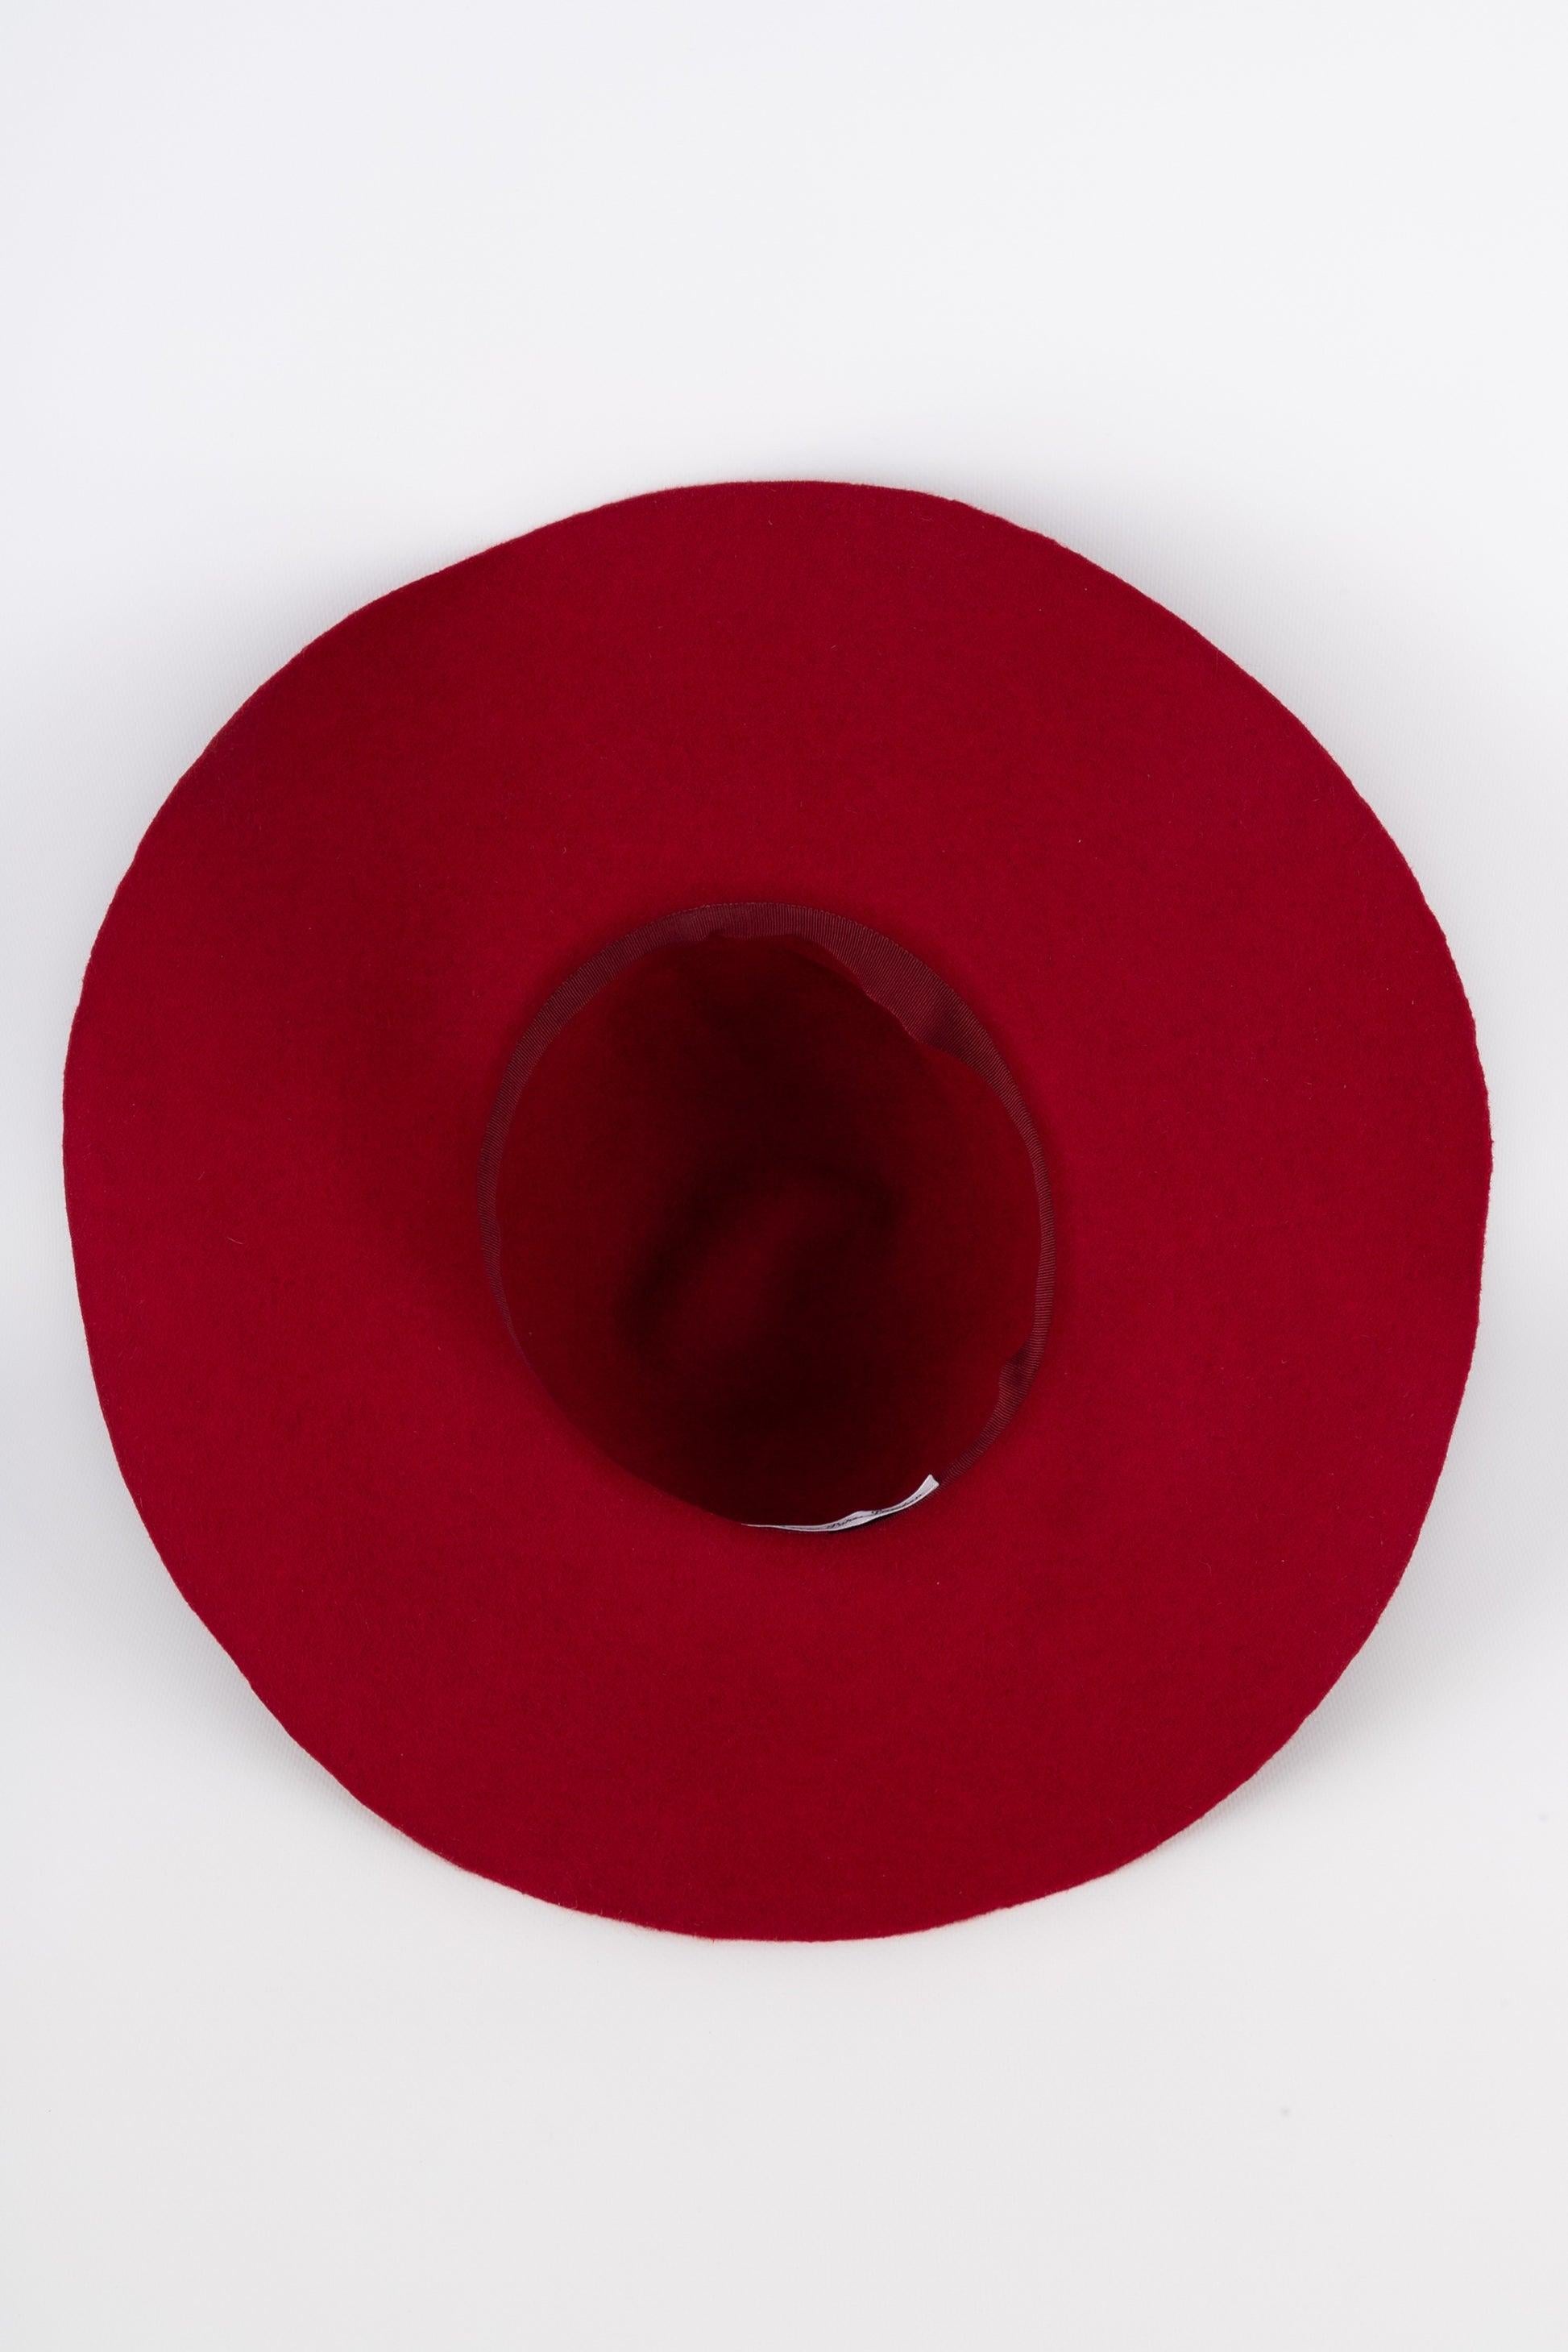 Marie Mercié Red Felt Hat For Sale 3